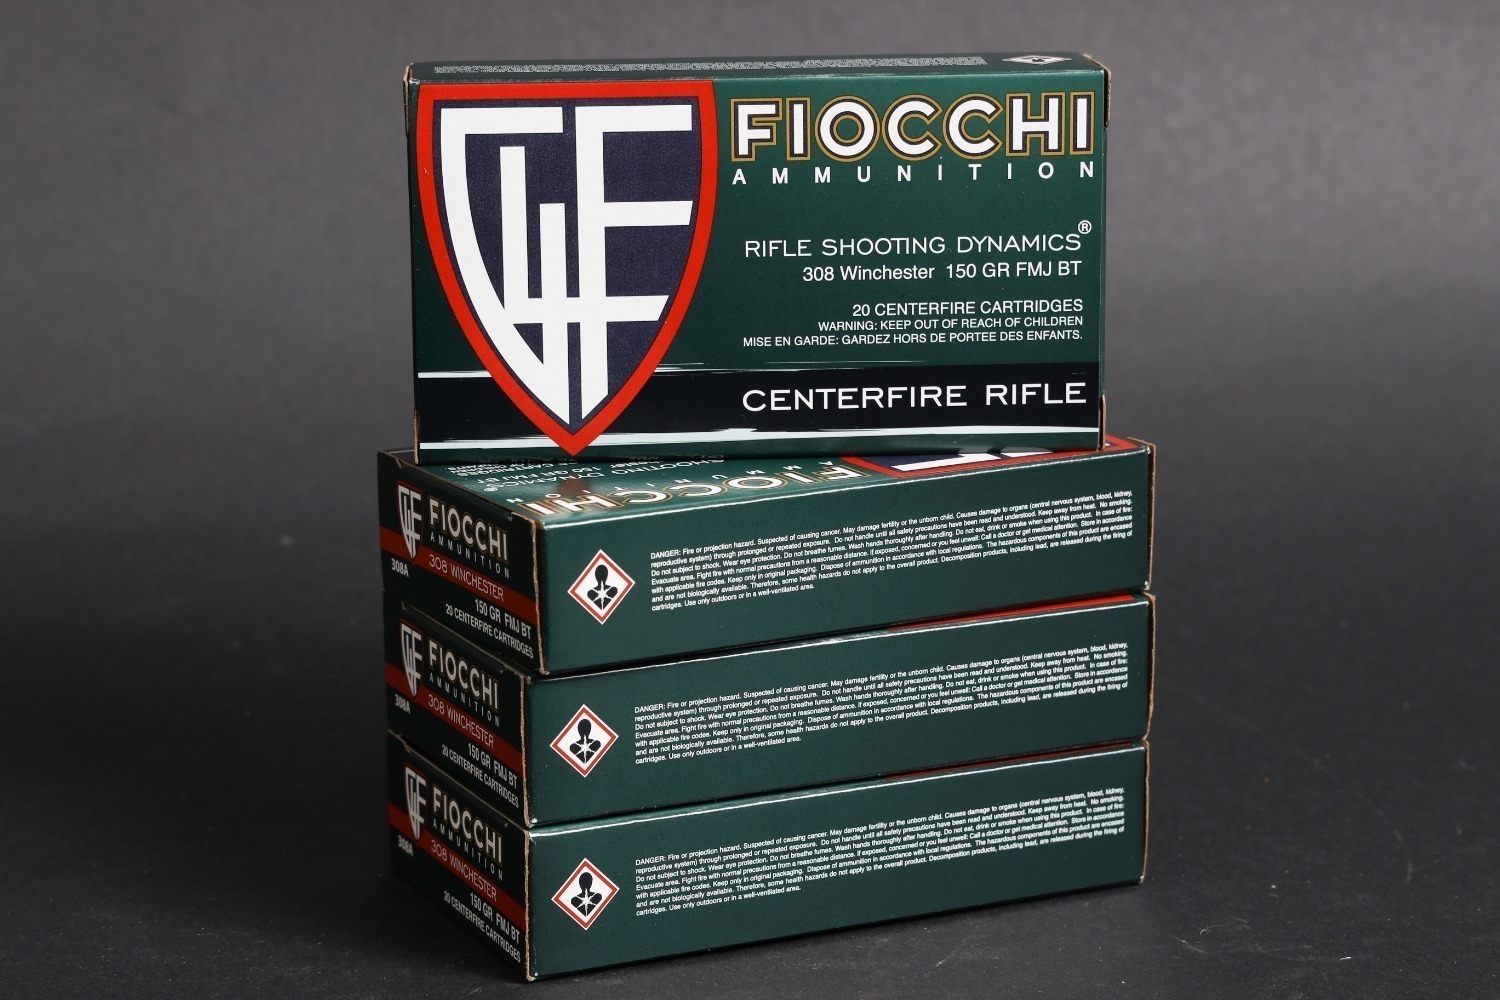 4 bxs Fiocchi .308 win ammo